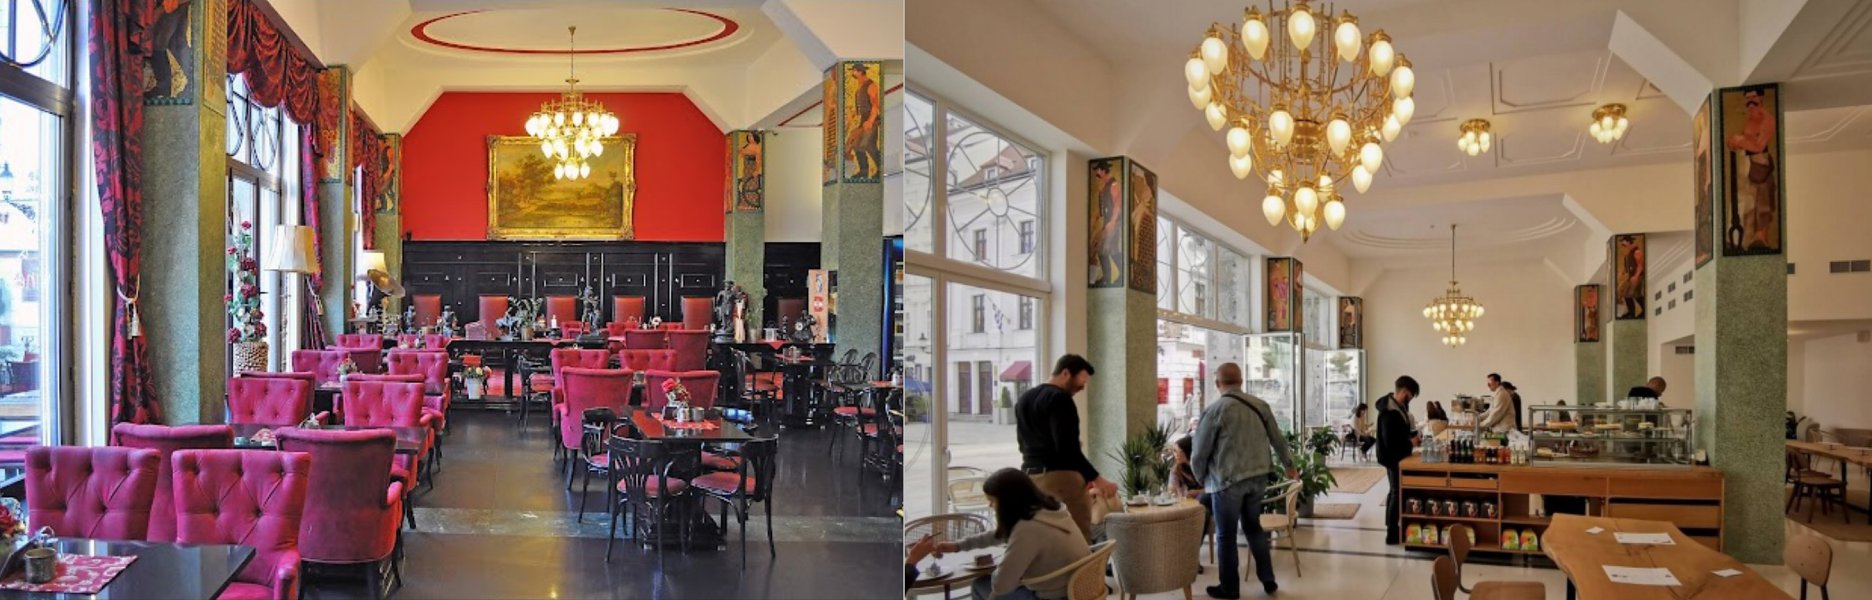 Vľavo: kaviareň Café – restaurand ROLAND, vpravo: typologicky neidentifikovateľný priestor